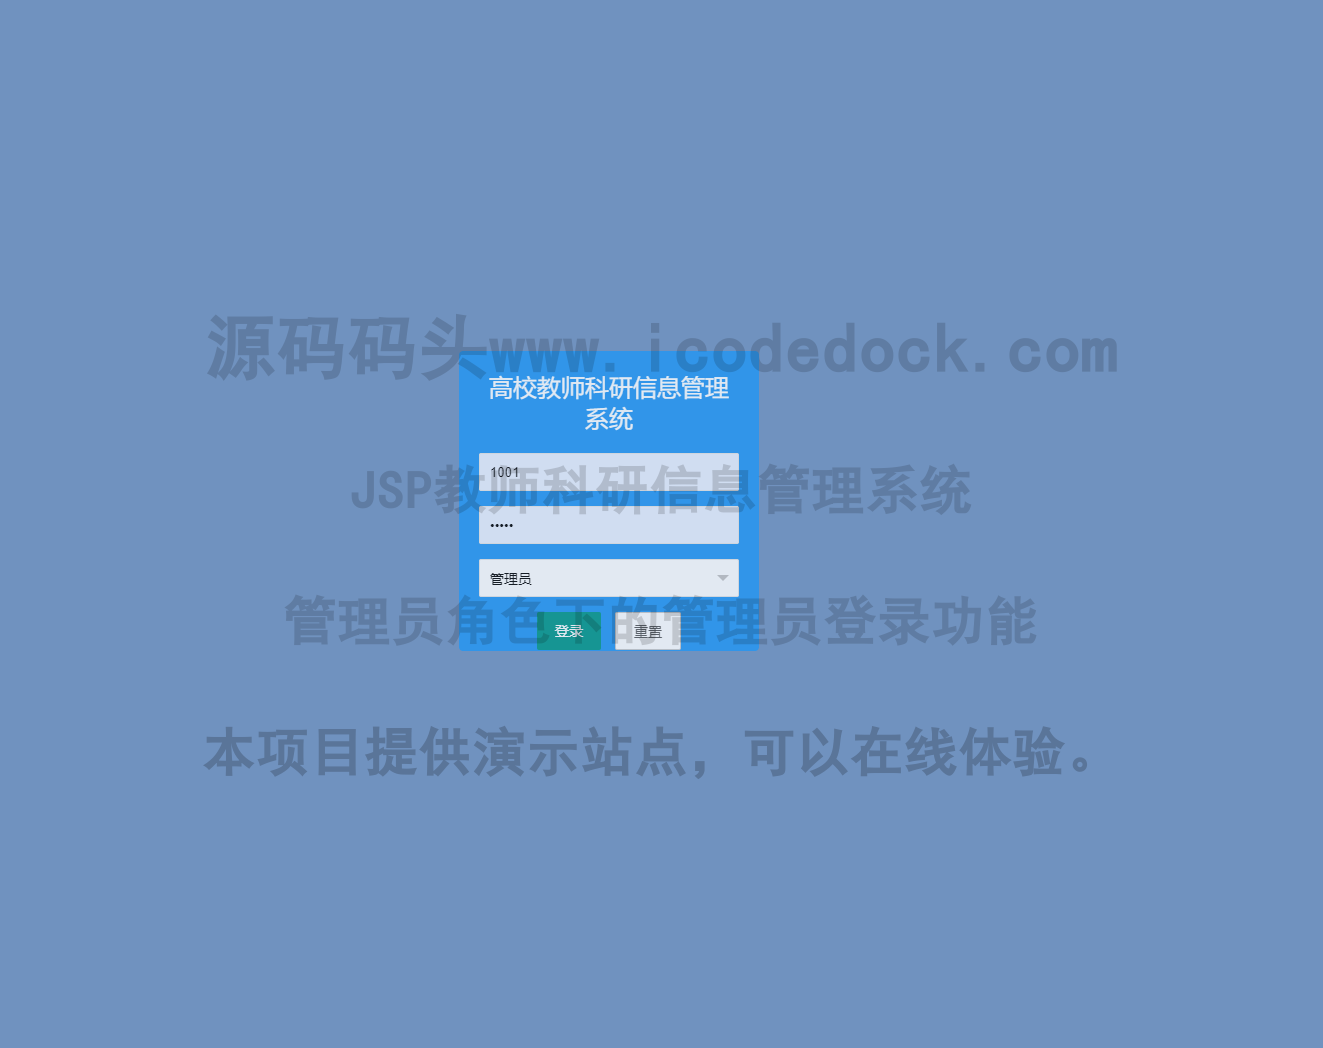 源码码头-JSP教师科研信息管理系统-管理员角色-管理员登录